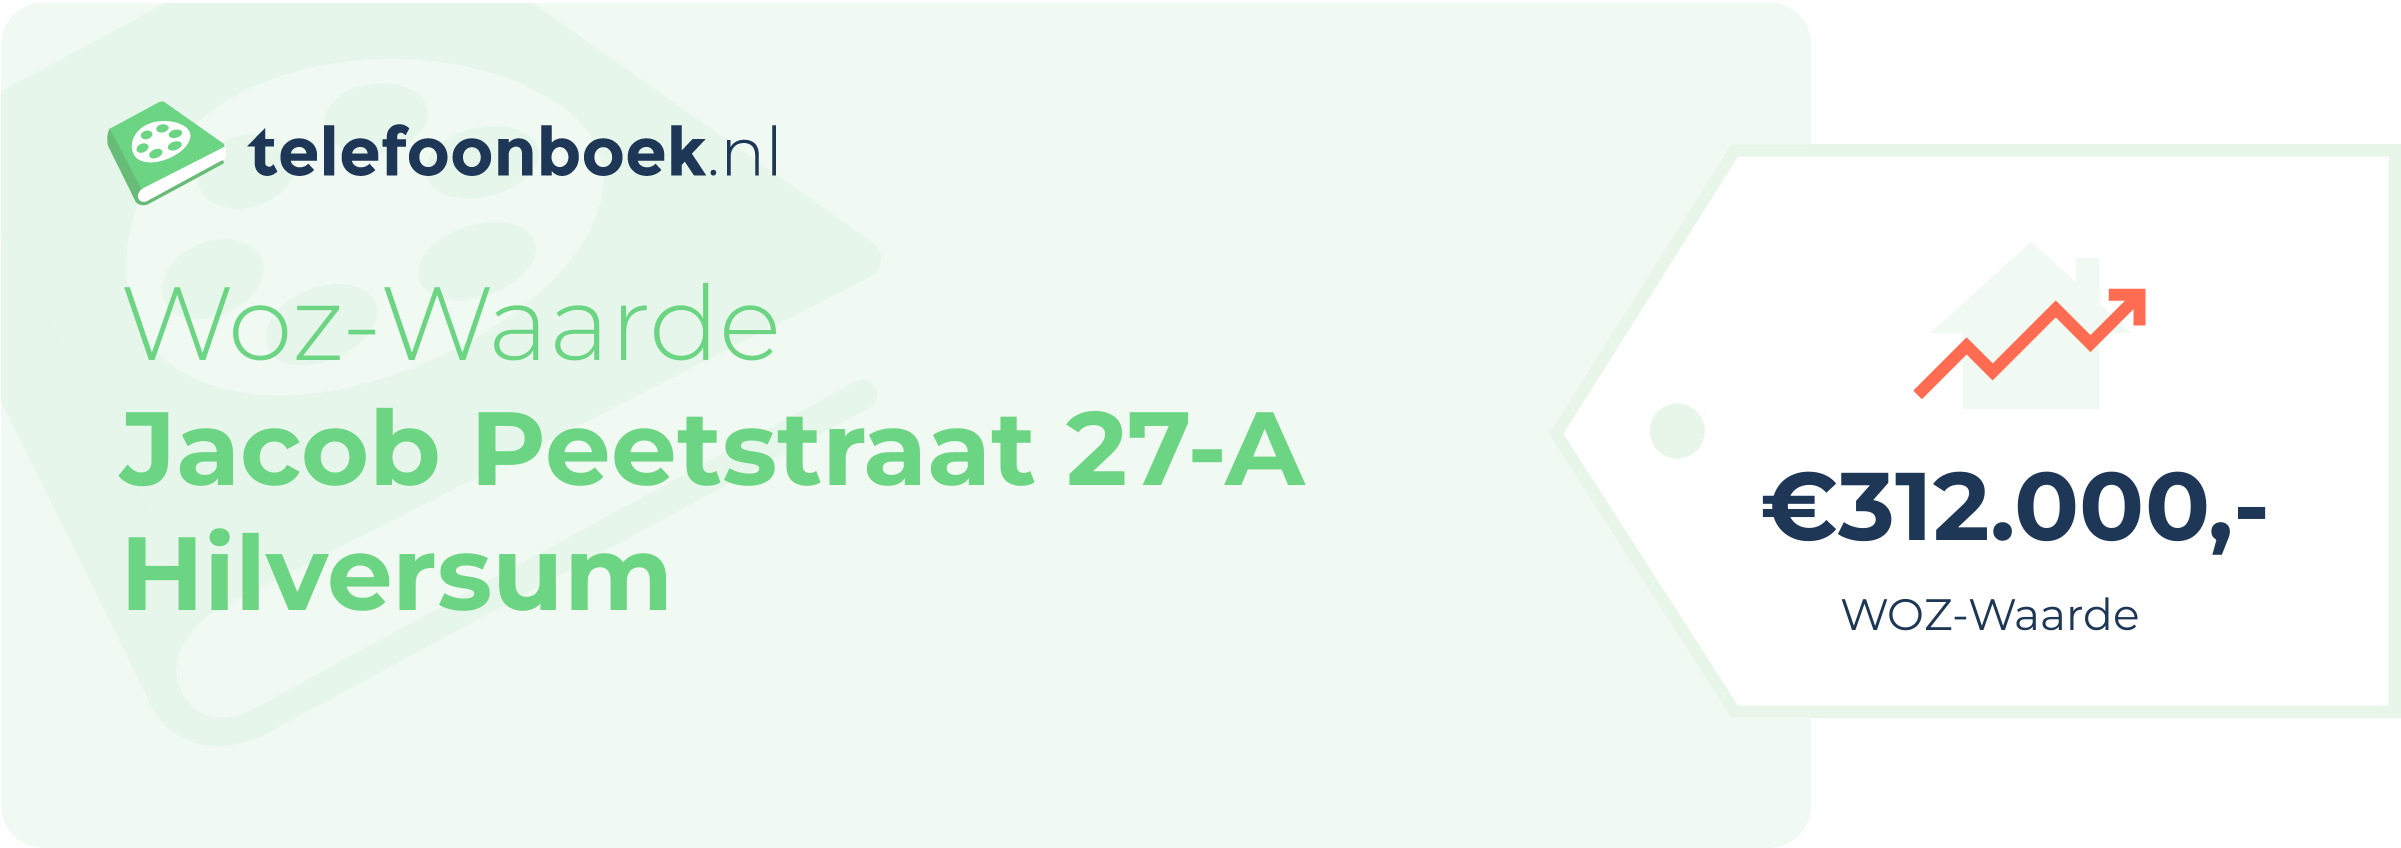 WOZ-waarde Jacob Peetstraat 27-A Hilversum